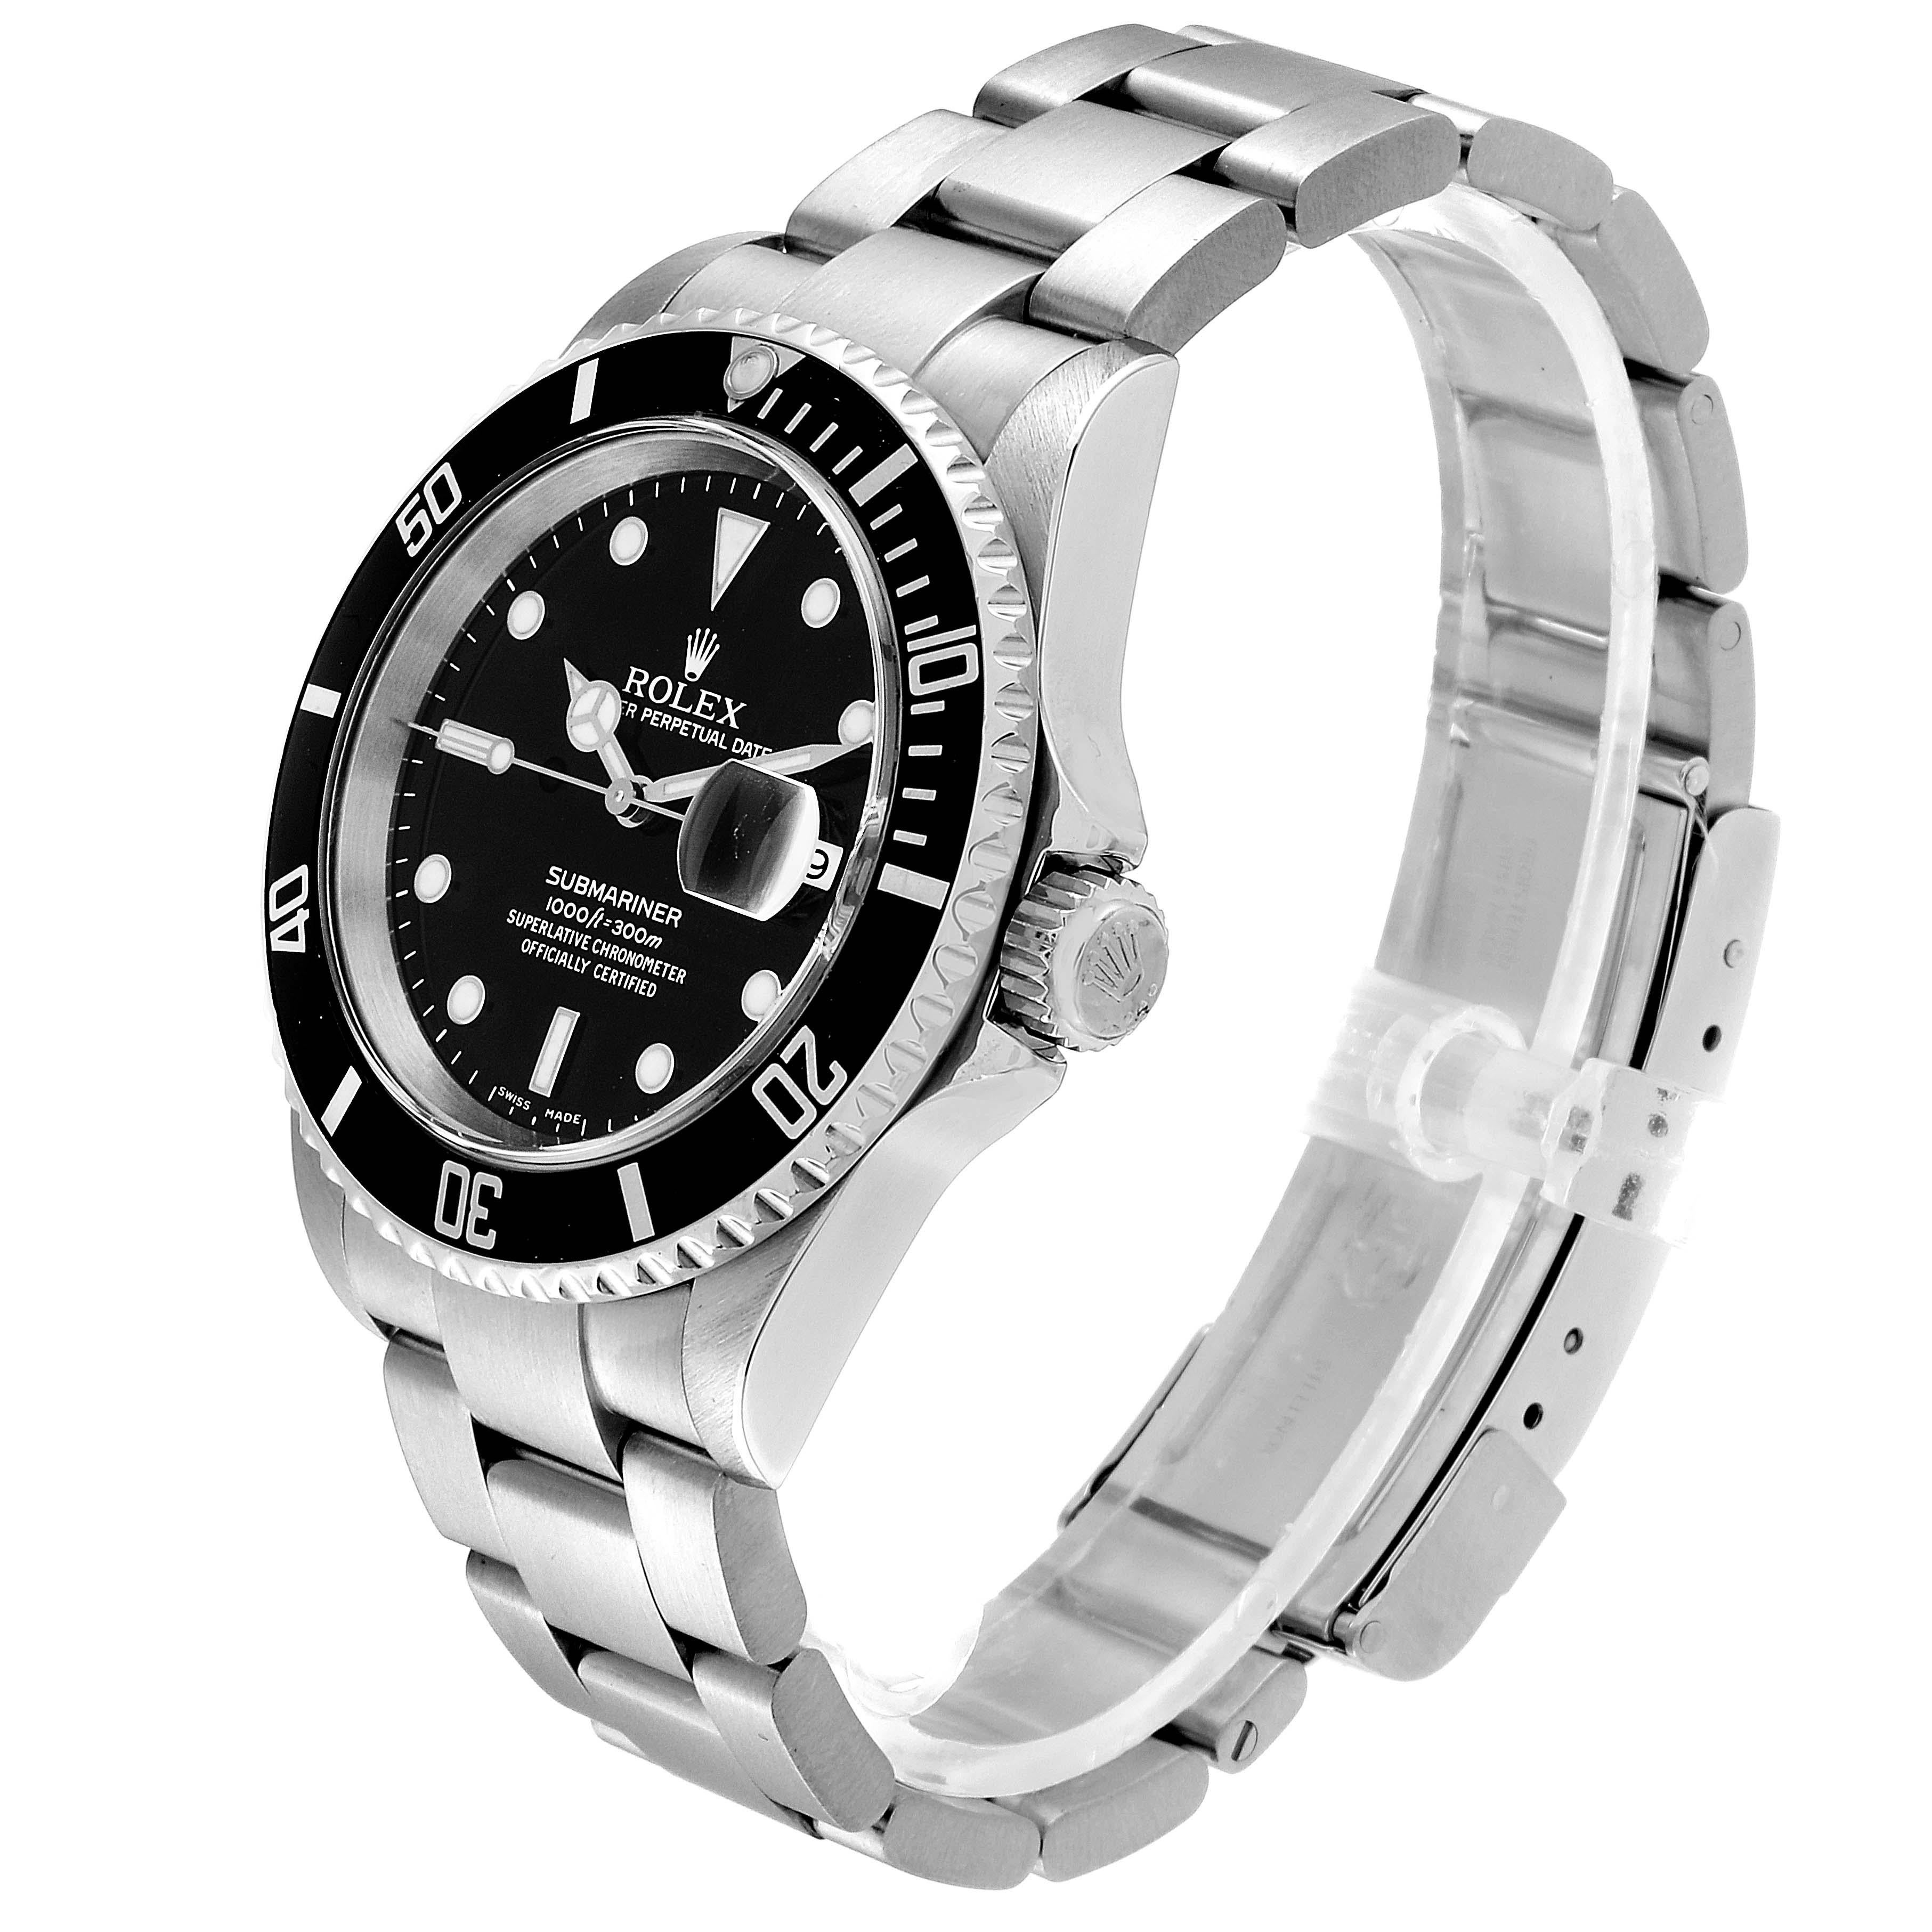 Rolex Submariner Date Stainless Steel Men's Watch 16610 1